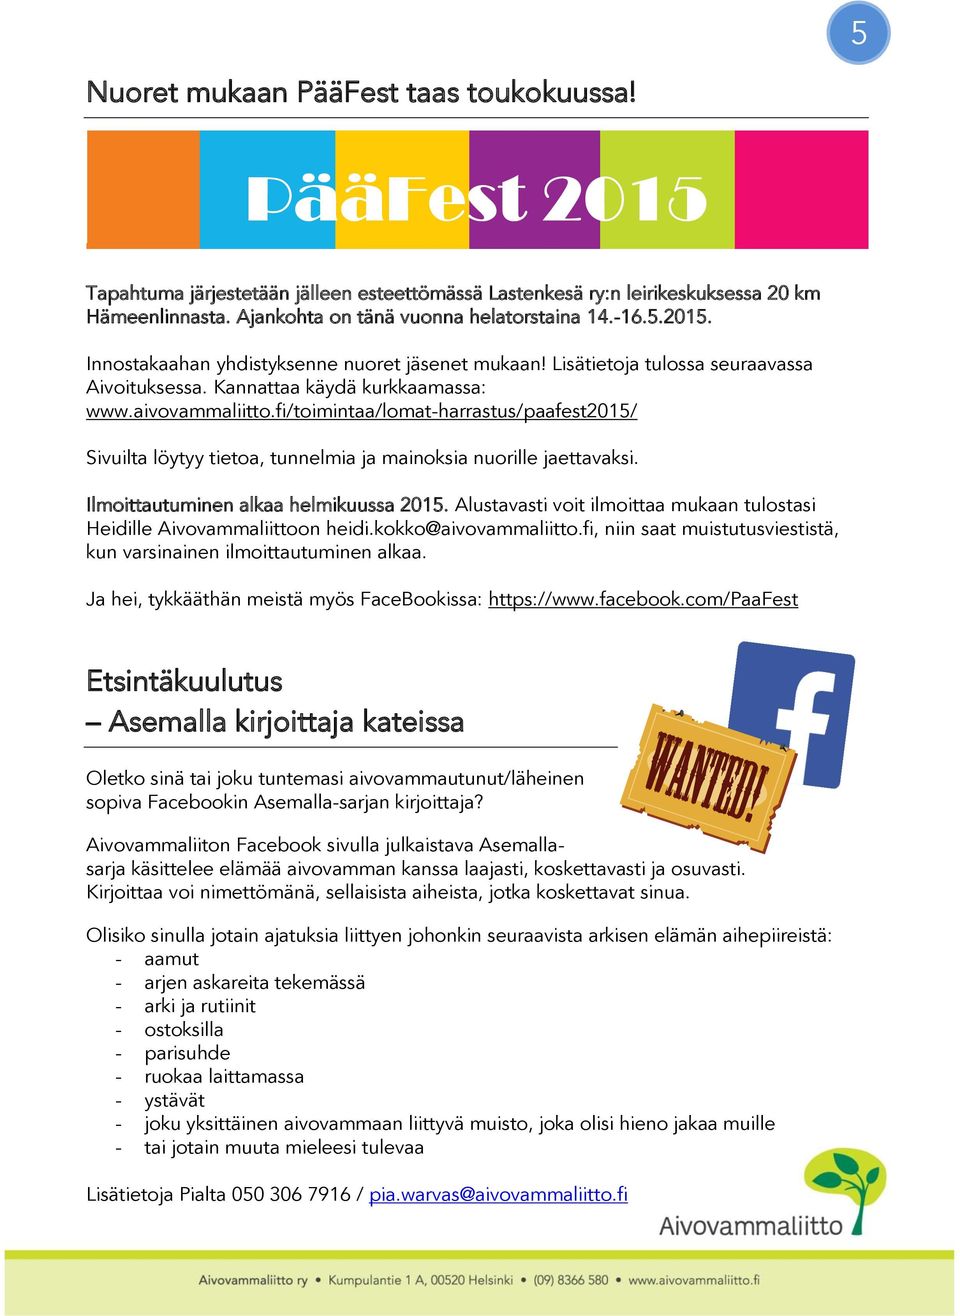 fi/toimintaa/lomat-harrastus/paafest2015/ Sivuilta löytyy tietoa, tunnelmia ja mainoksia nuorille jaettavaksi. Ilmoittautuminen alkaa helmikuussa 2015.